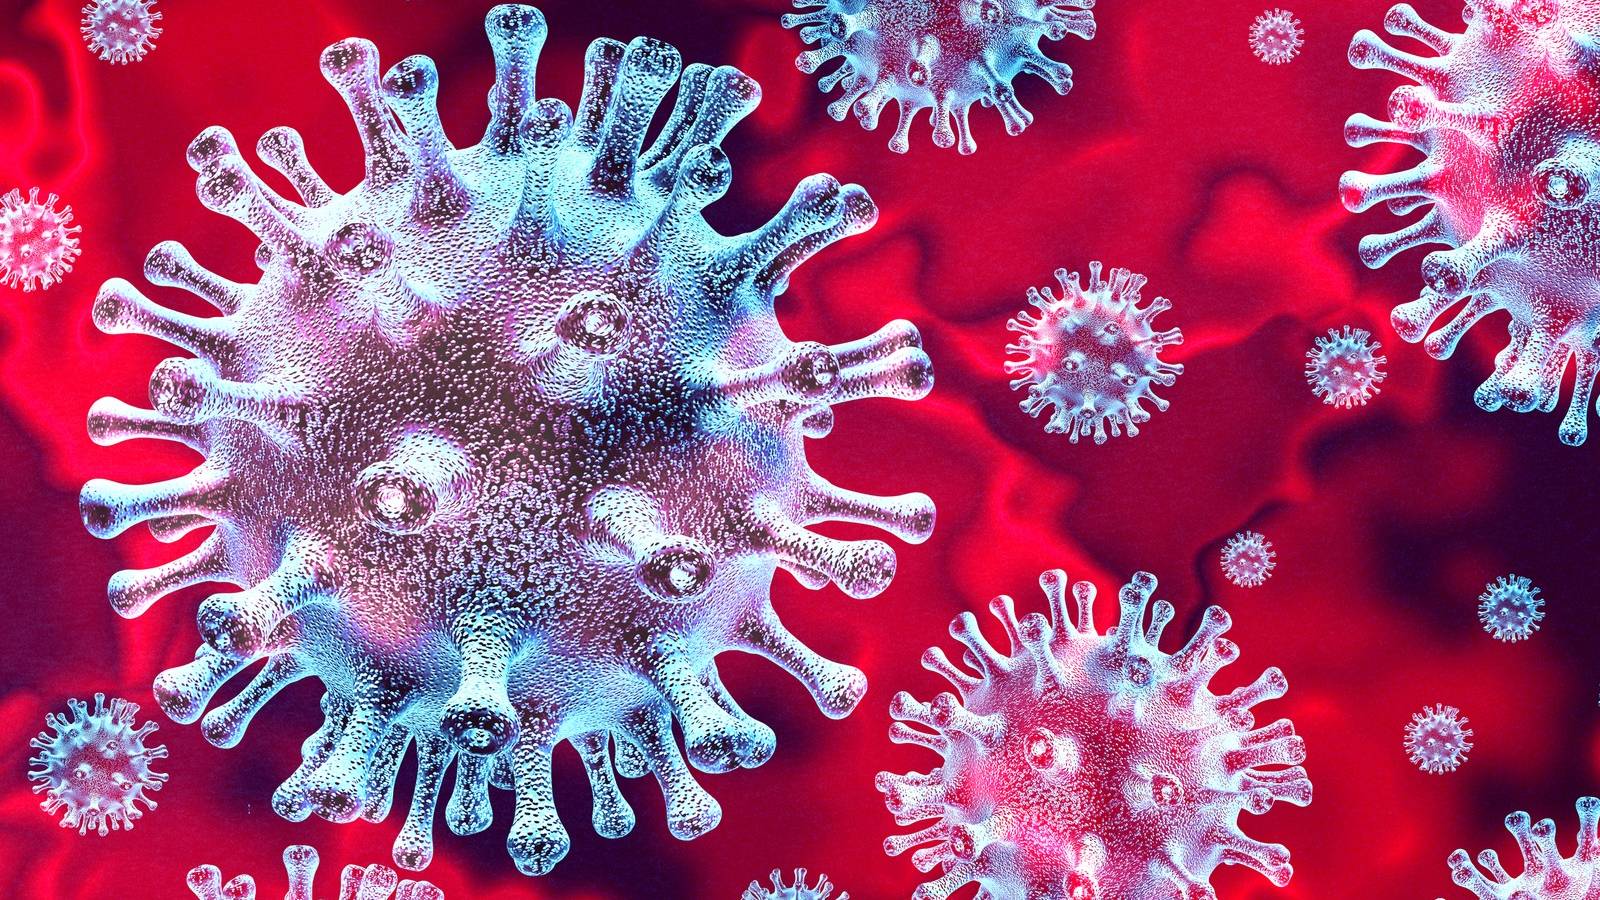 Coronavirus Roemenië dringend verzoek